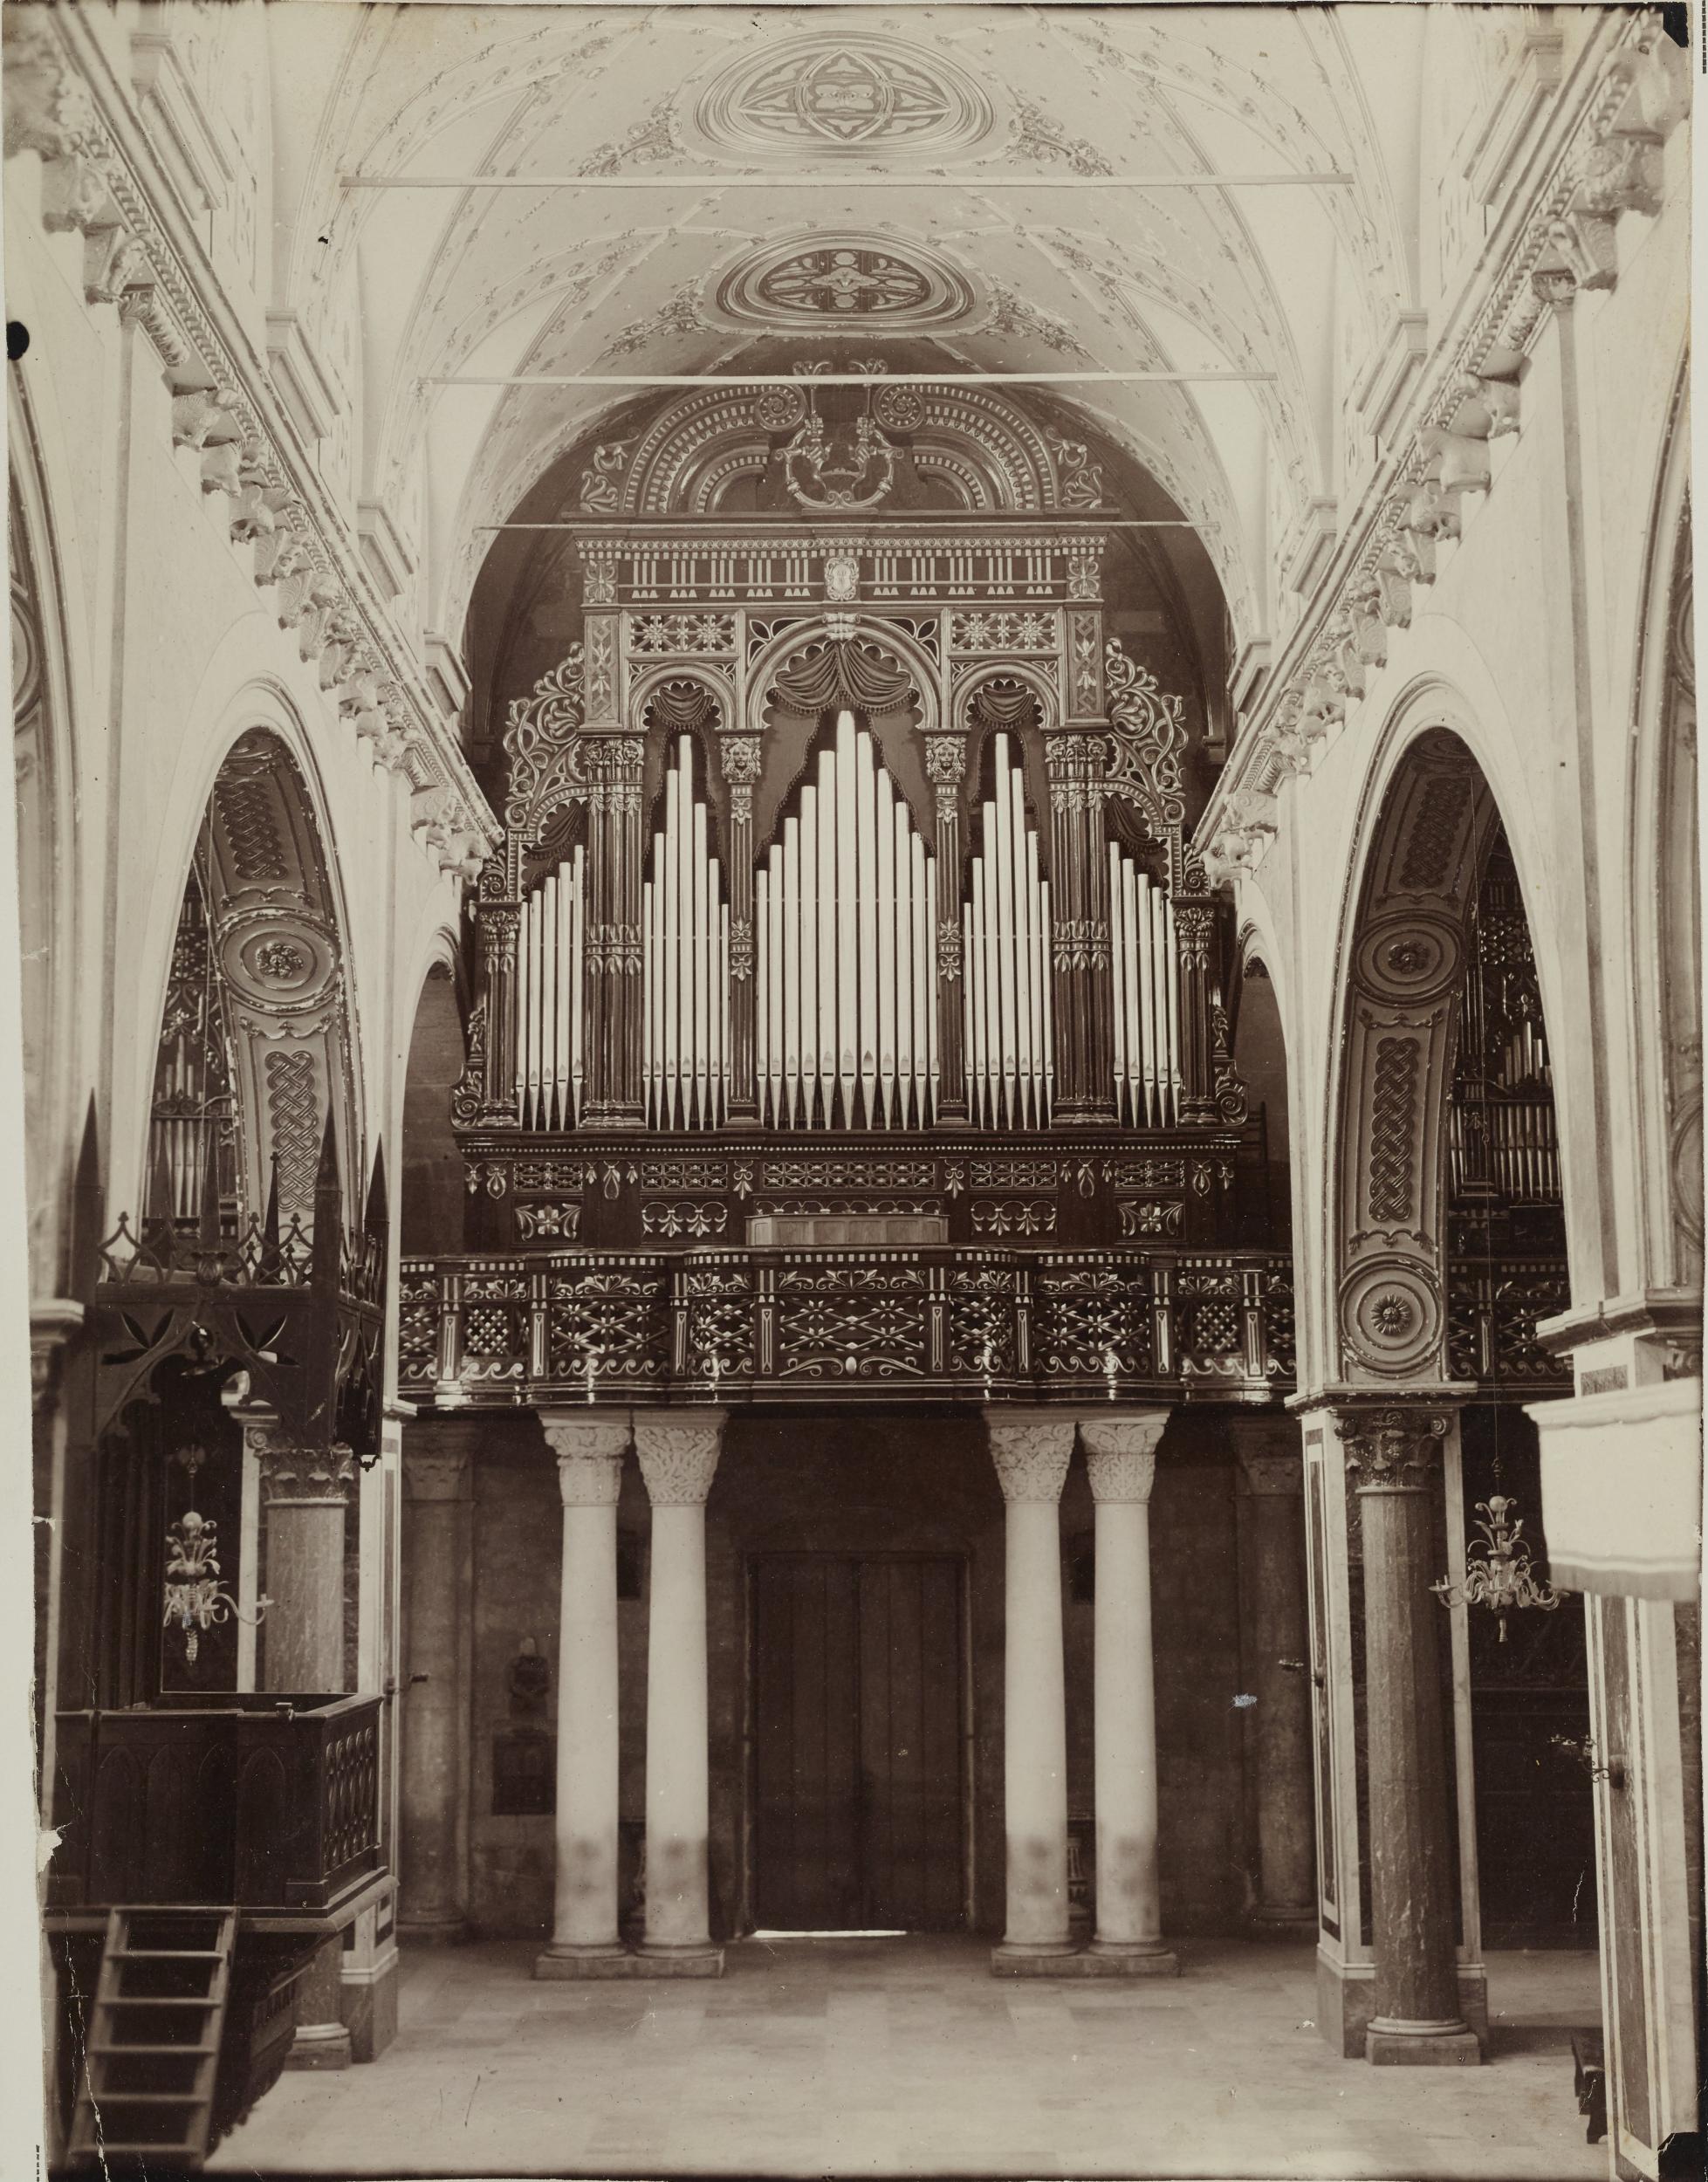 Fotografo non identificato, Acquaviva delle Fonti - Cattedrale, organo e cantoria, 1901-1925, gelatina ai sali d'argento/carta, MPI130130